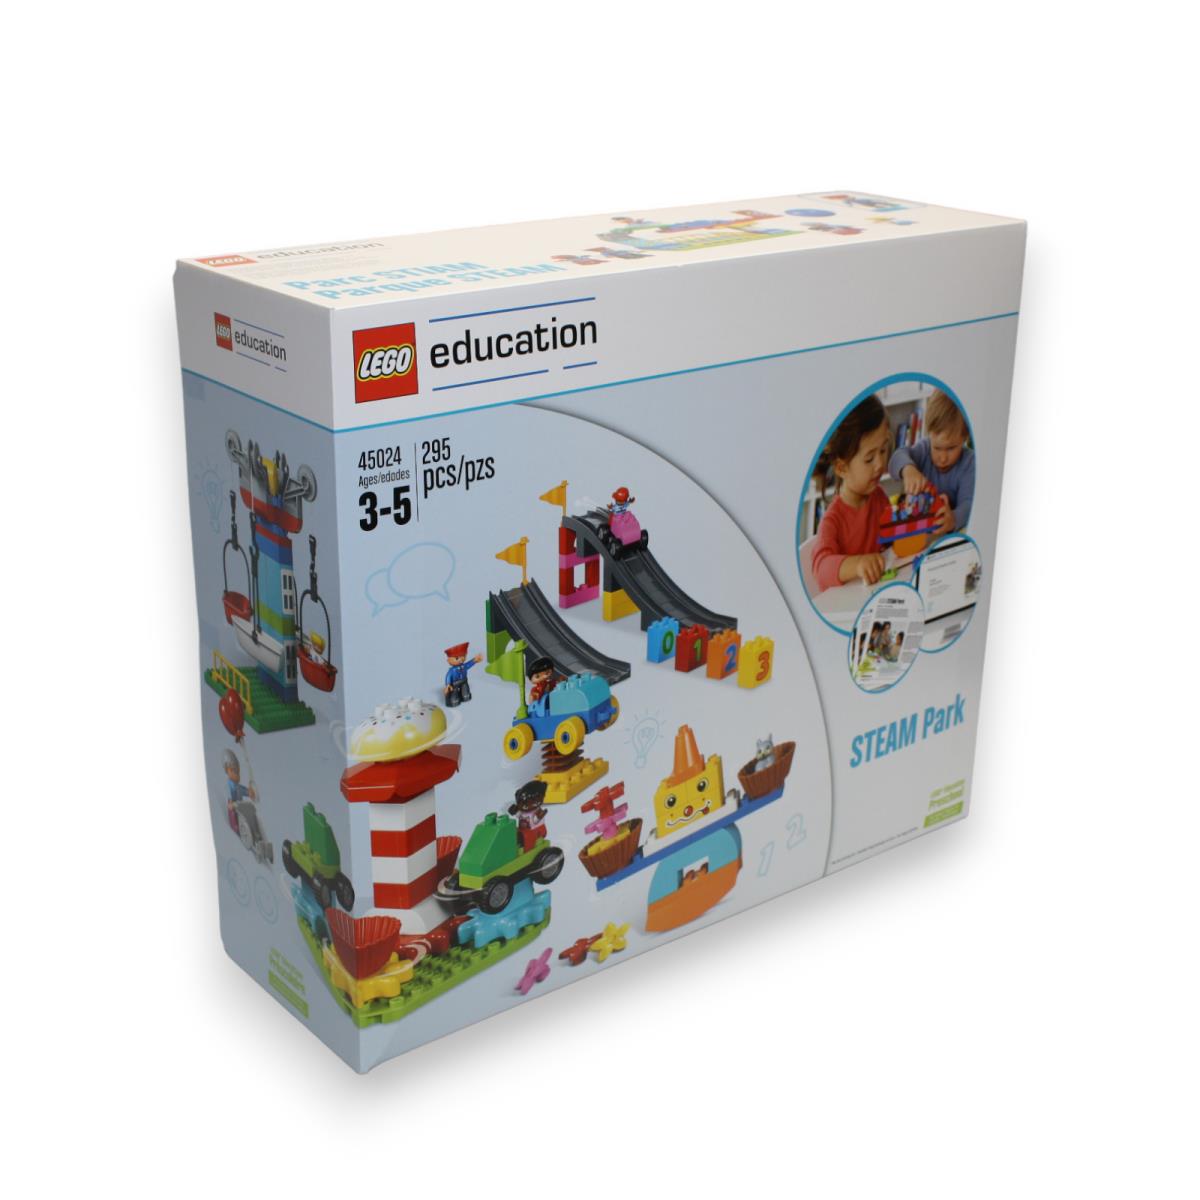 Lego Education Steam Park 45024 295pcs Duplo 6215441